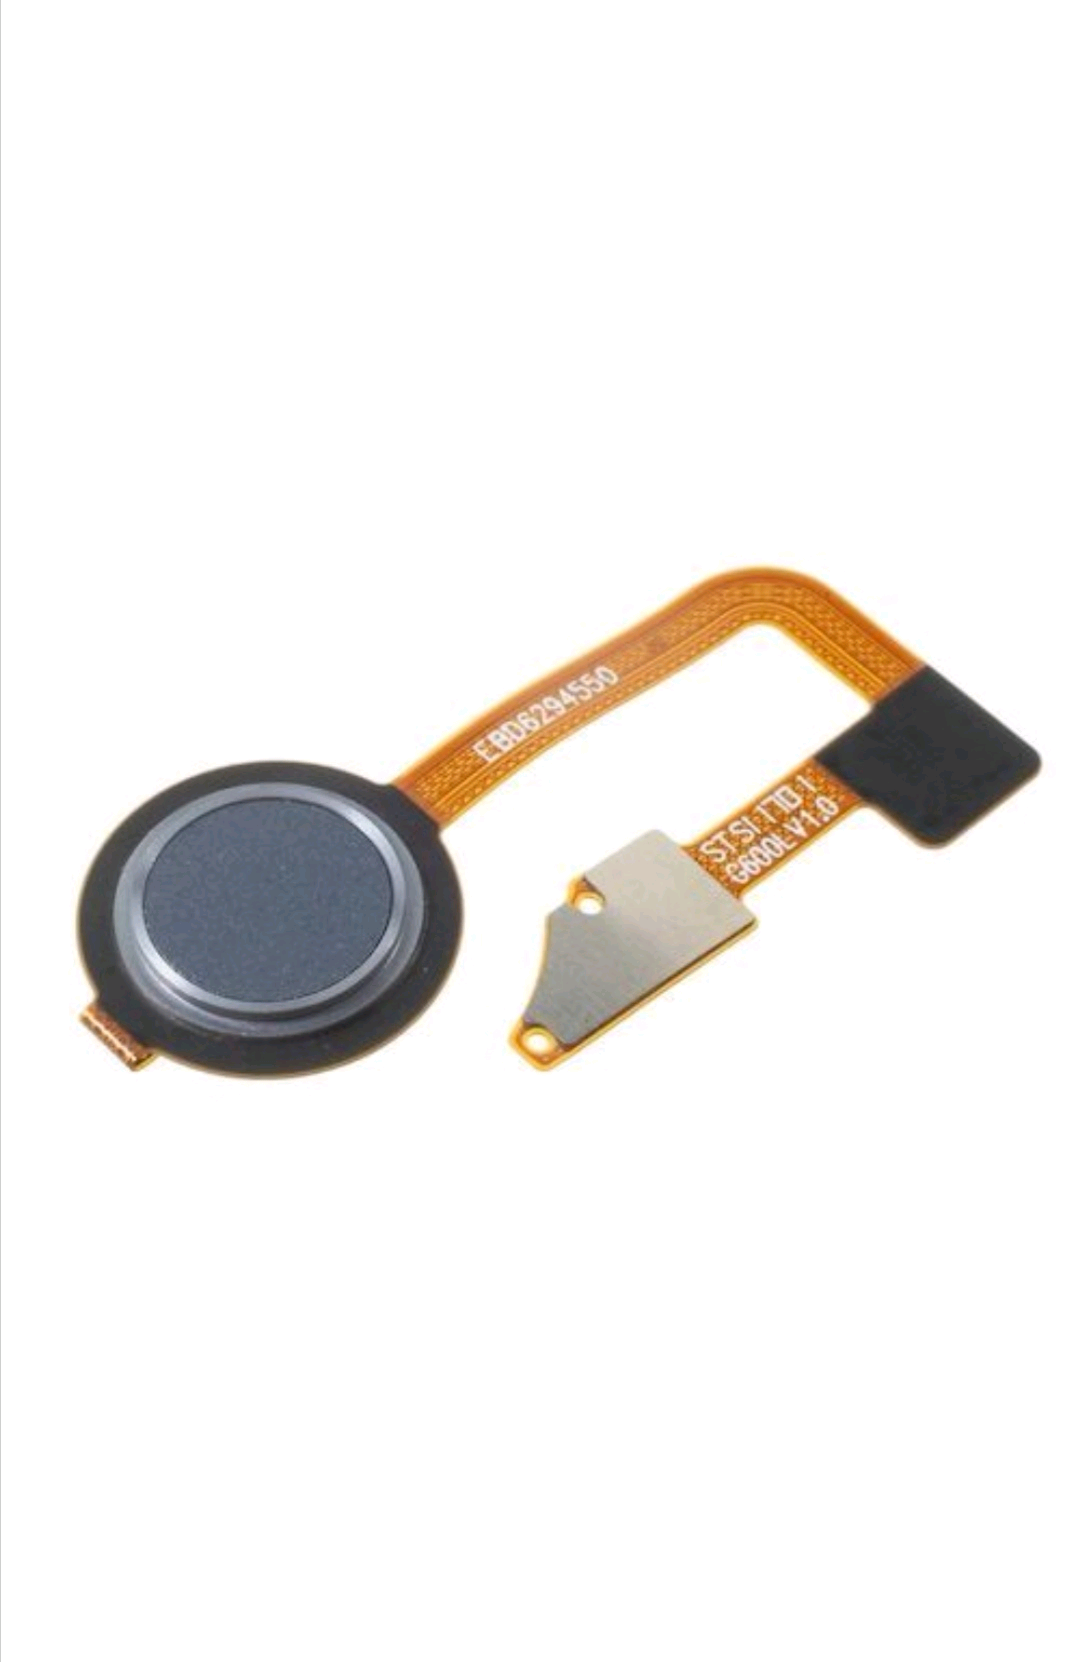 LG G6 Power Button with Fingerprint Sensor Suppliers